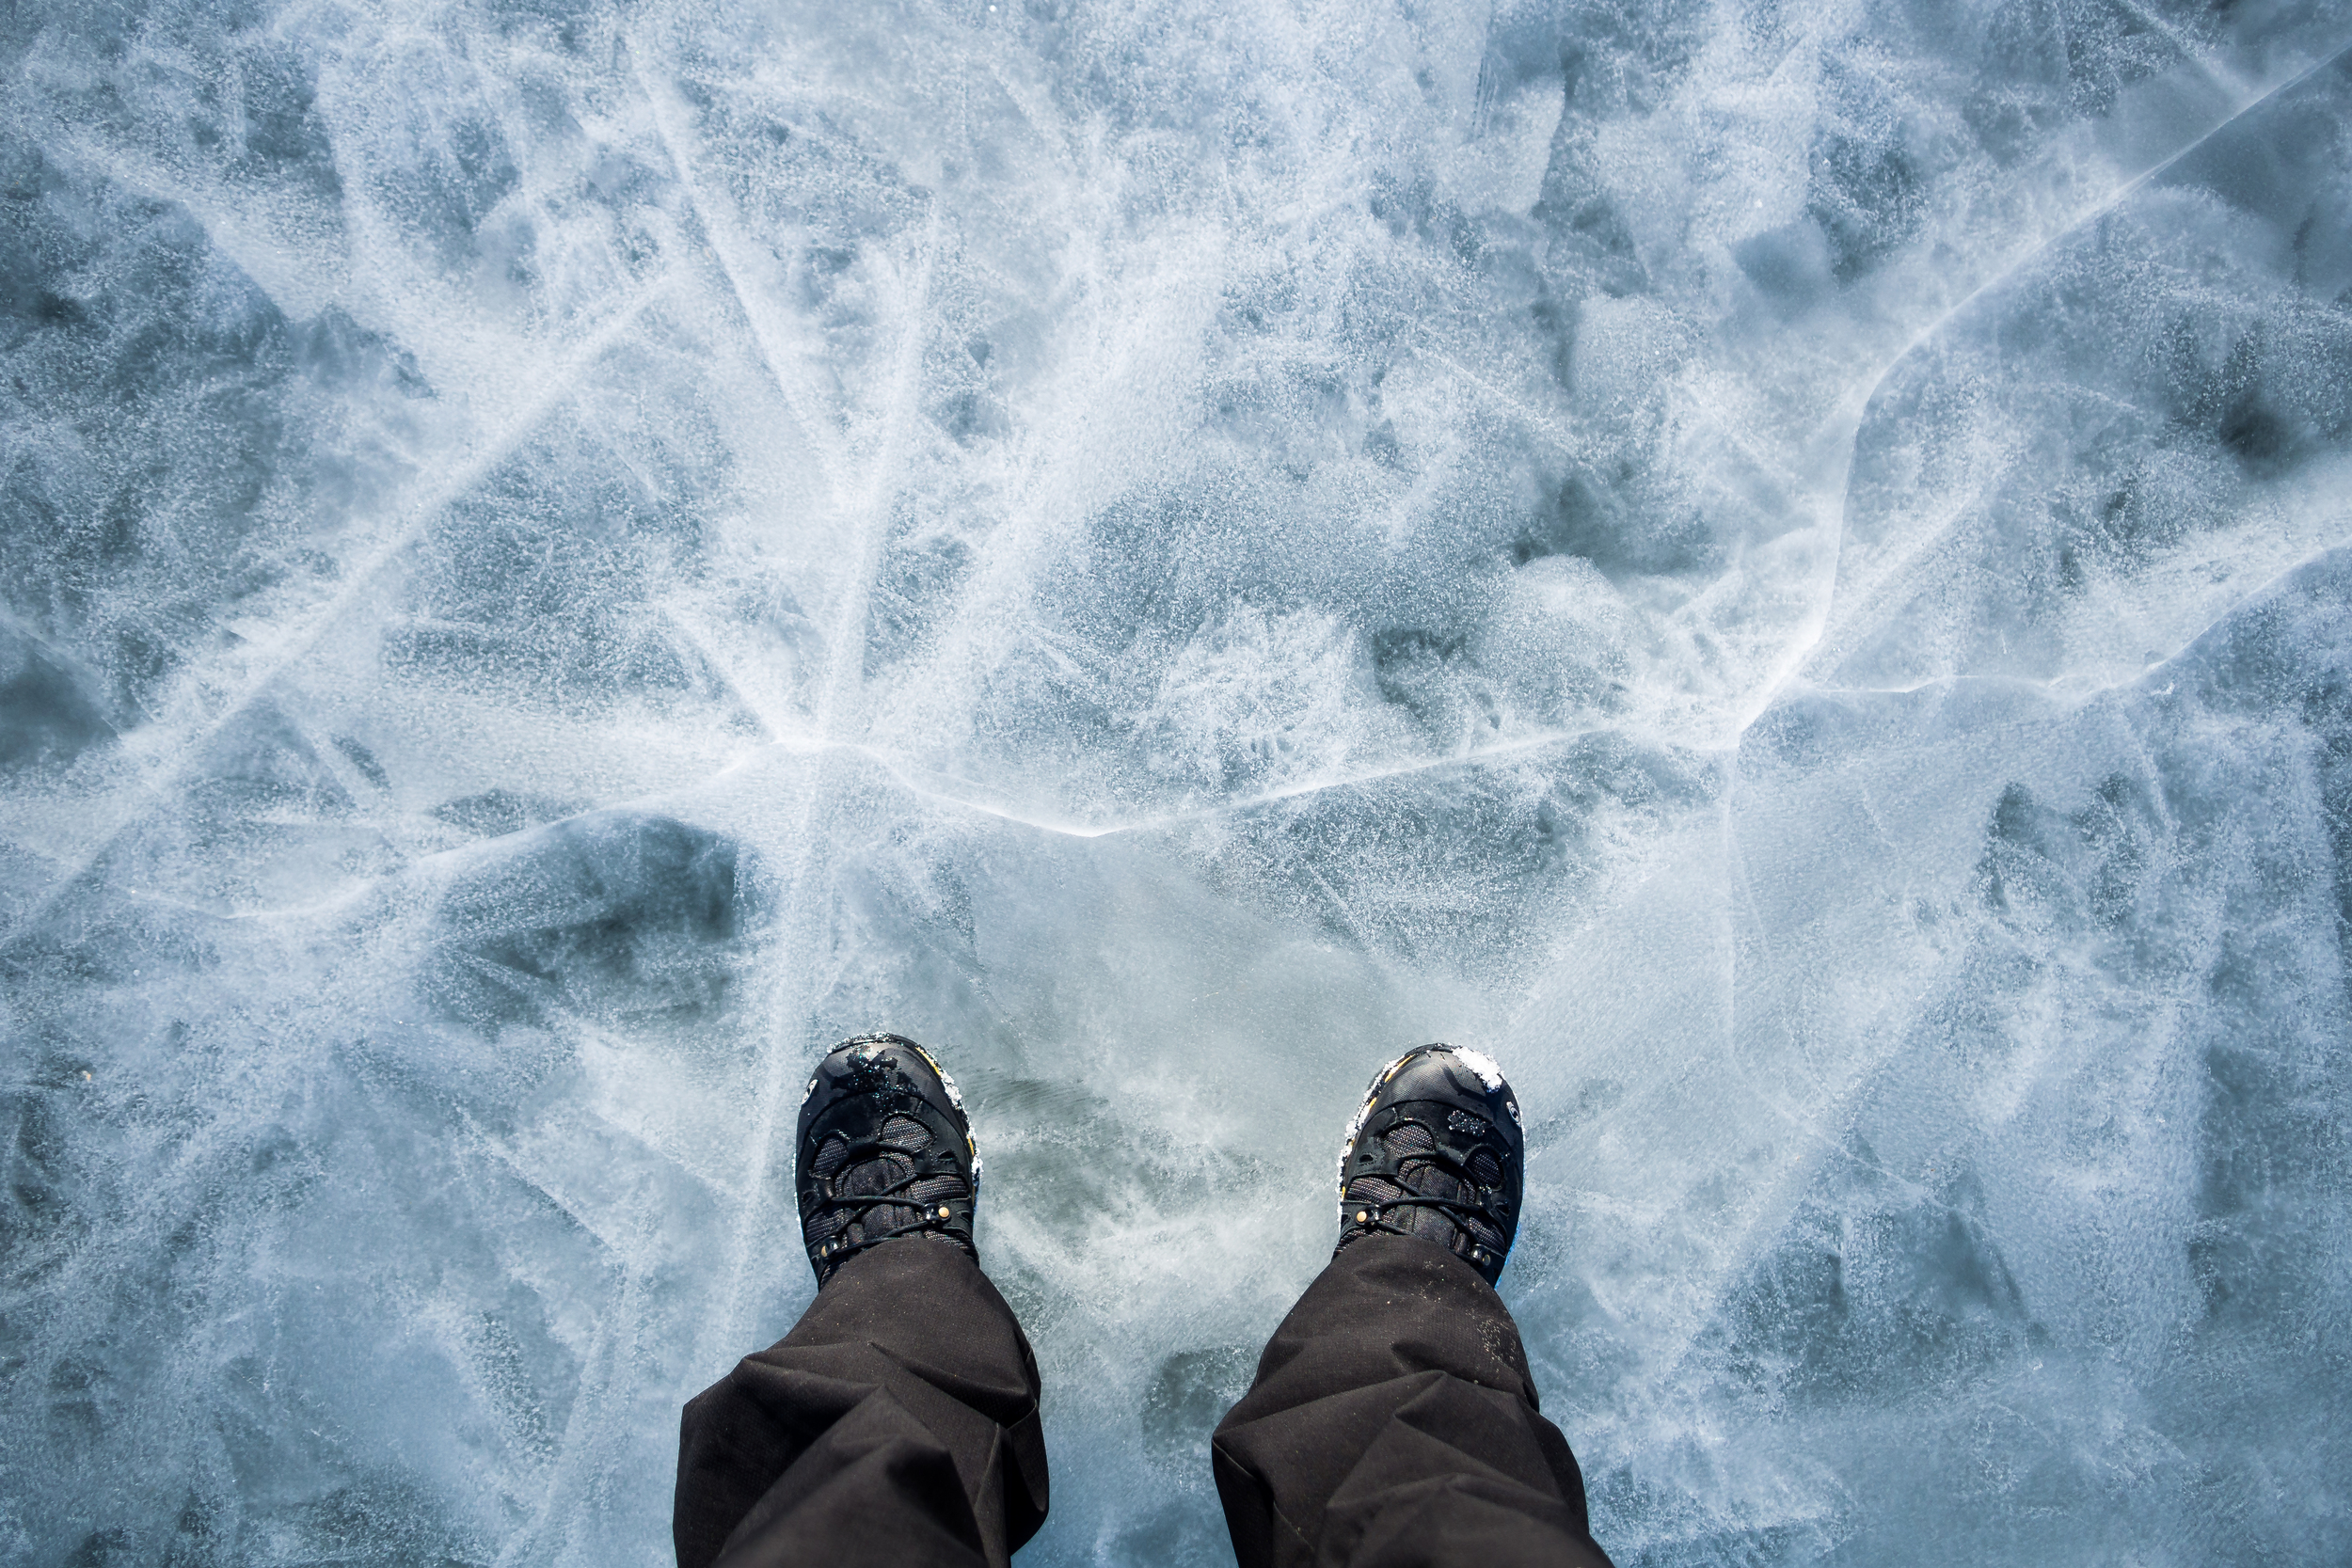 Walking on thin ice